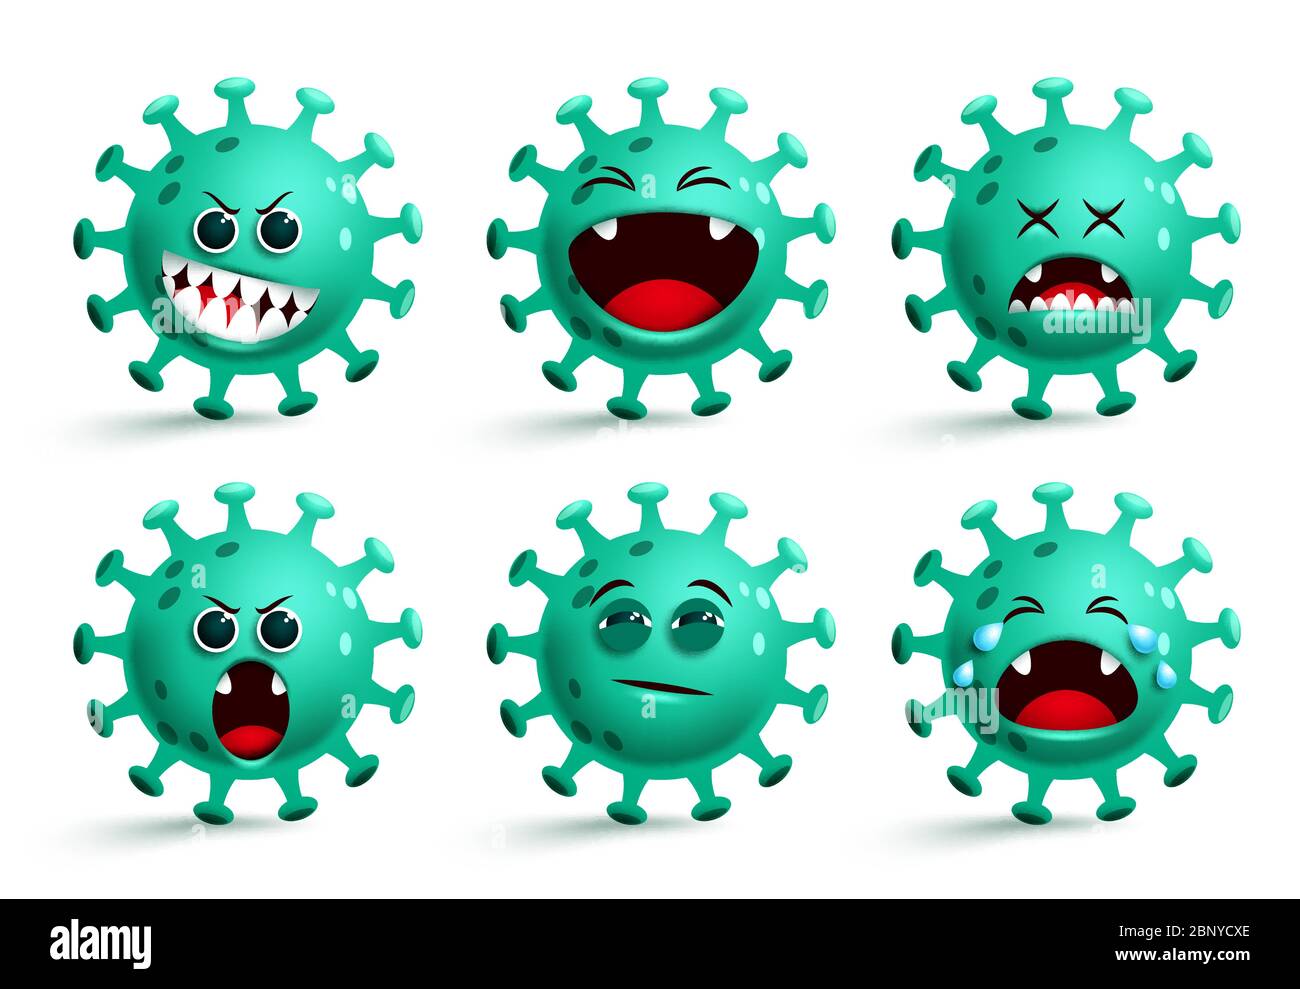 Covid-19 Coronavirus Emoji-Vektorset. Coronavirus covid19 Smileys Emoticon und Emojis mit glücklichen und überraschenden Gesichtsausdrücken isoliert. Stock Vektor